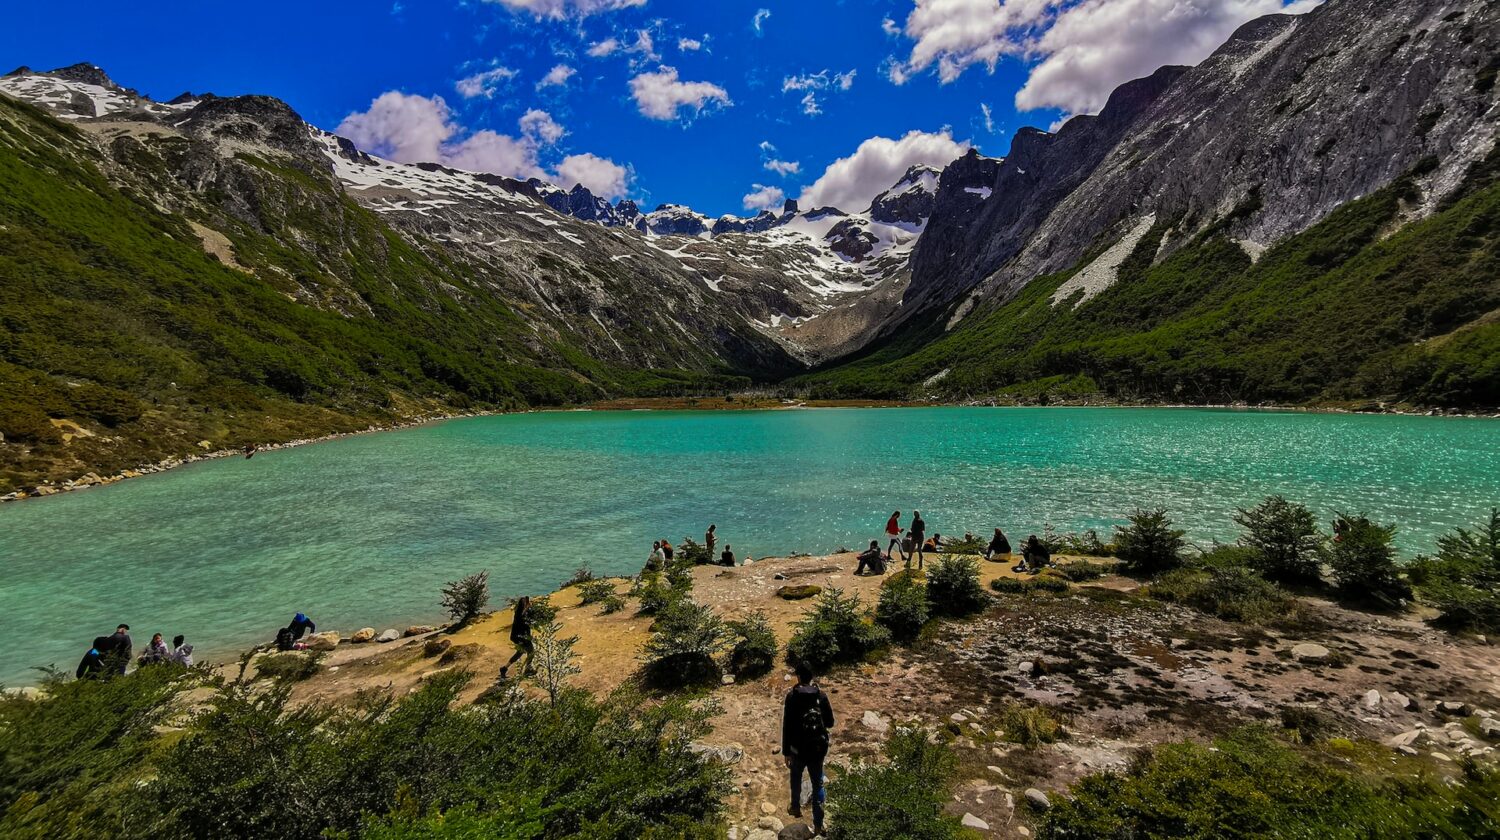 pessoas ao redor da Laguna Esmeralda, que ilustra o post de chip celular Ushuaia, estando em pé ou sentadas nas pedras baixas e vegetação escassa na beirada do lago esverdeado com montanhas ao redor e céu muito azul com poucas nuvens